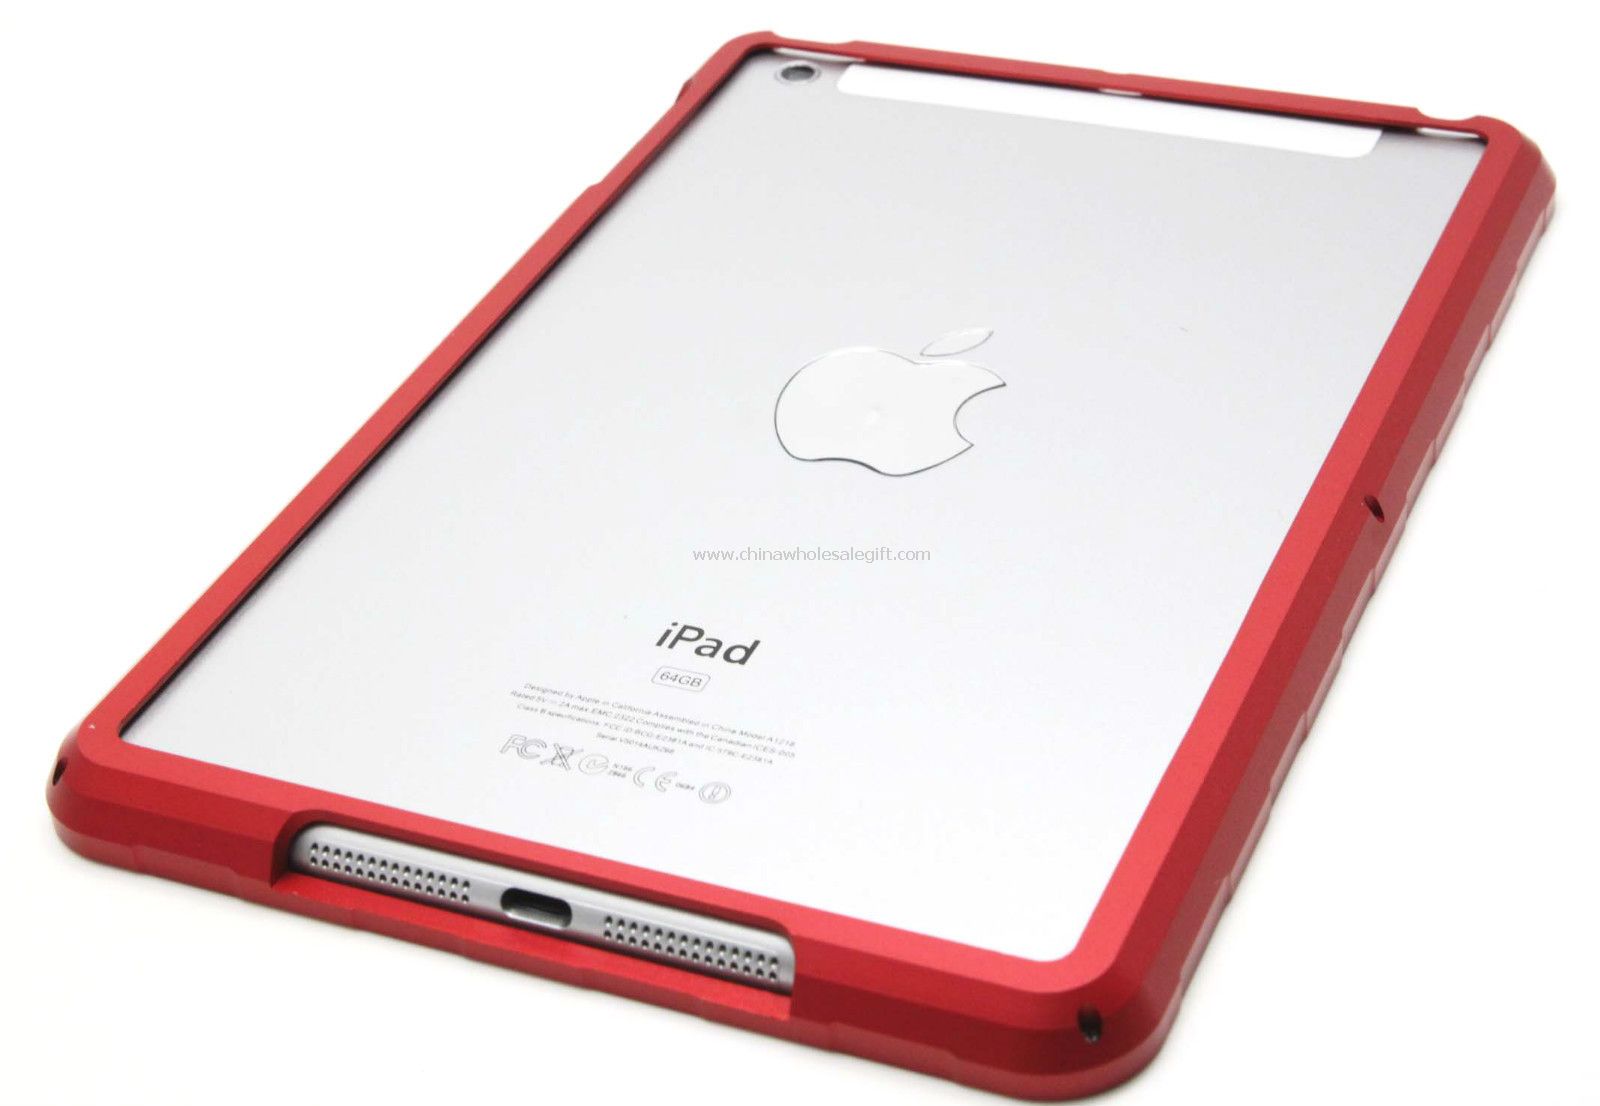 Premium Aluminium Metal Alloy Bumper kasus sulit untuk iPad Mini